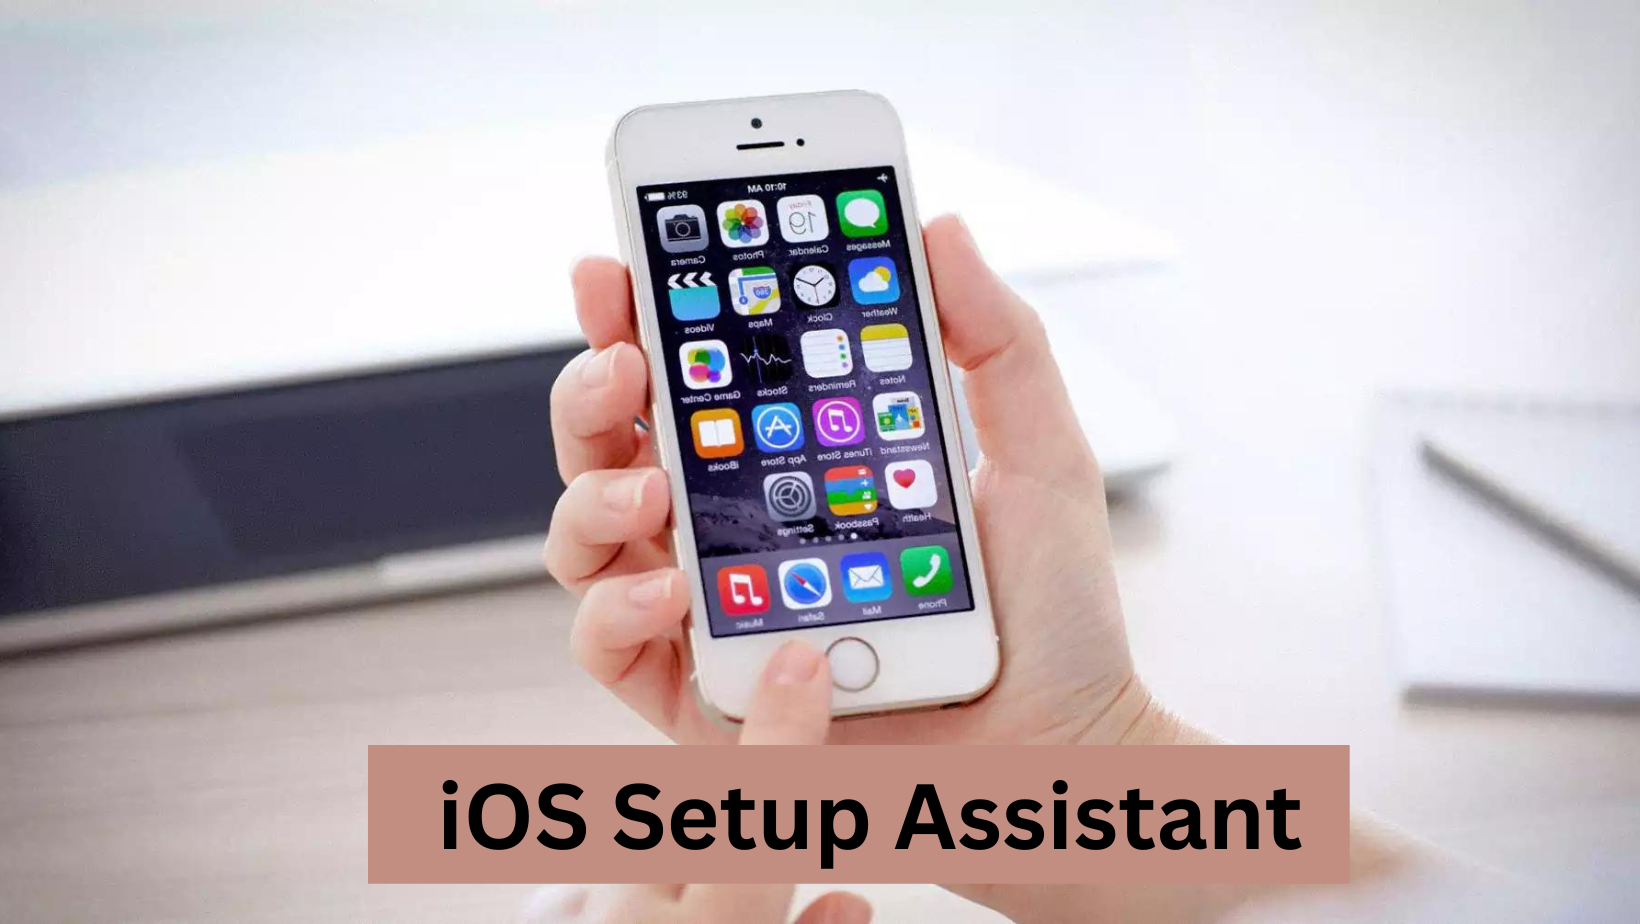 iOS Setup Assistant